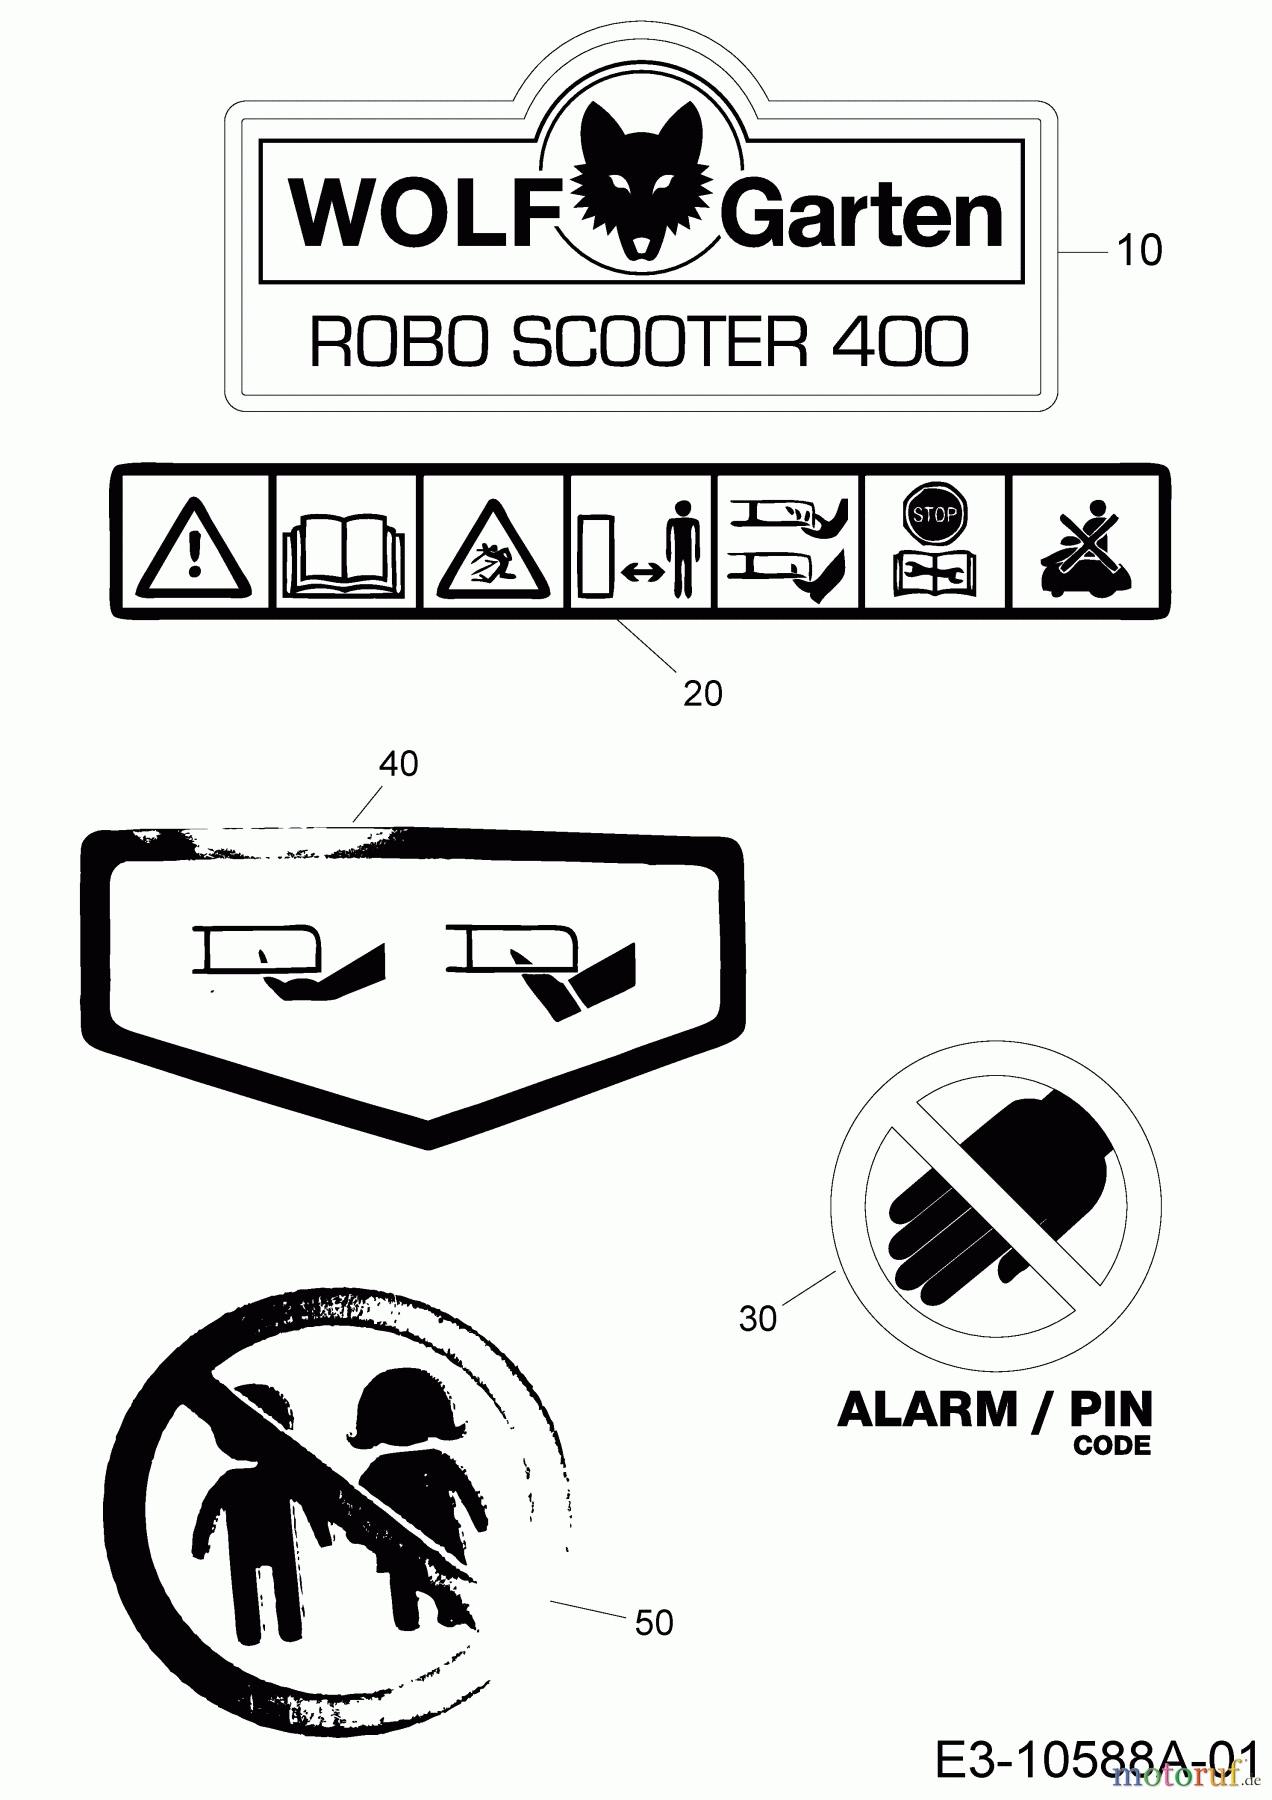  Wolf-Garten Mähroboter Robo Scooter 400 18AO04LF650  (2014) Aufkleber